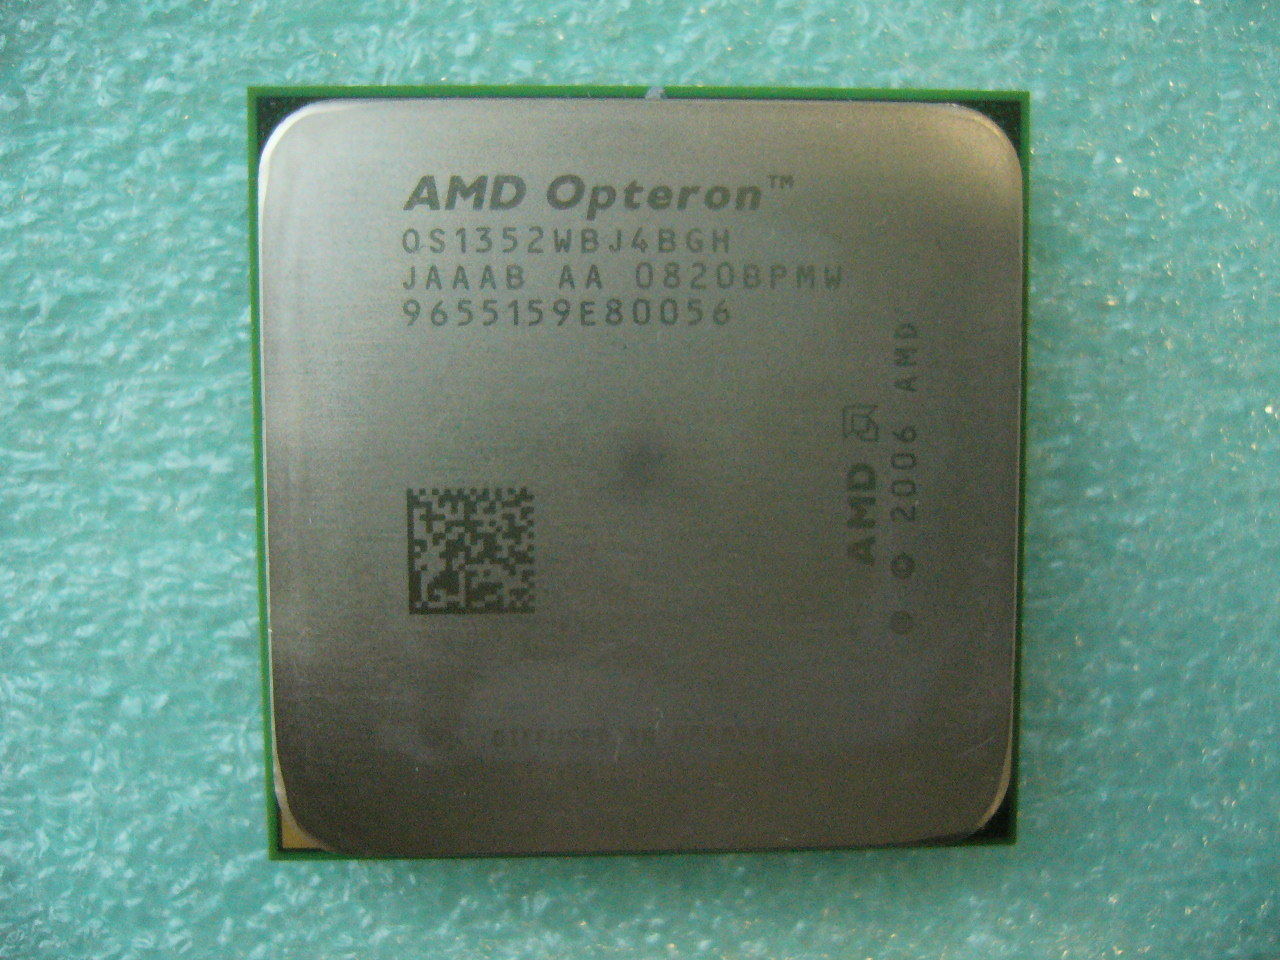 QTY 1x AMD Opteron CPU 2.1 GHz Quad-Core (OS1352WBJ4BGH) CPU AM2+ 940-Pin